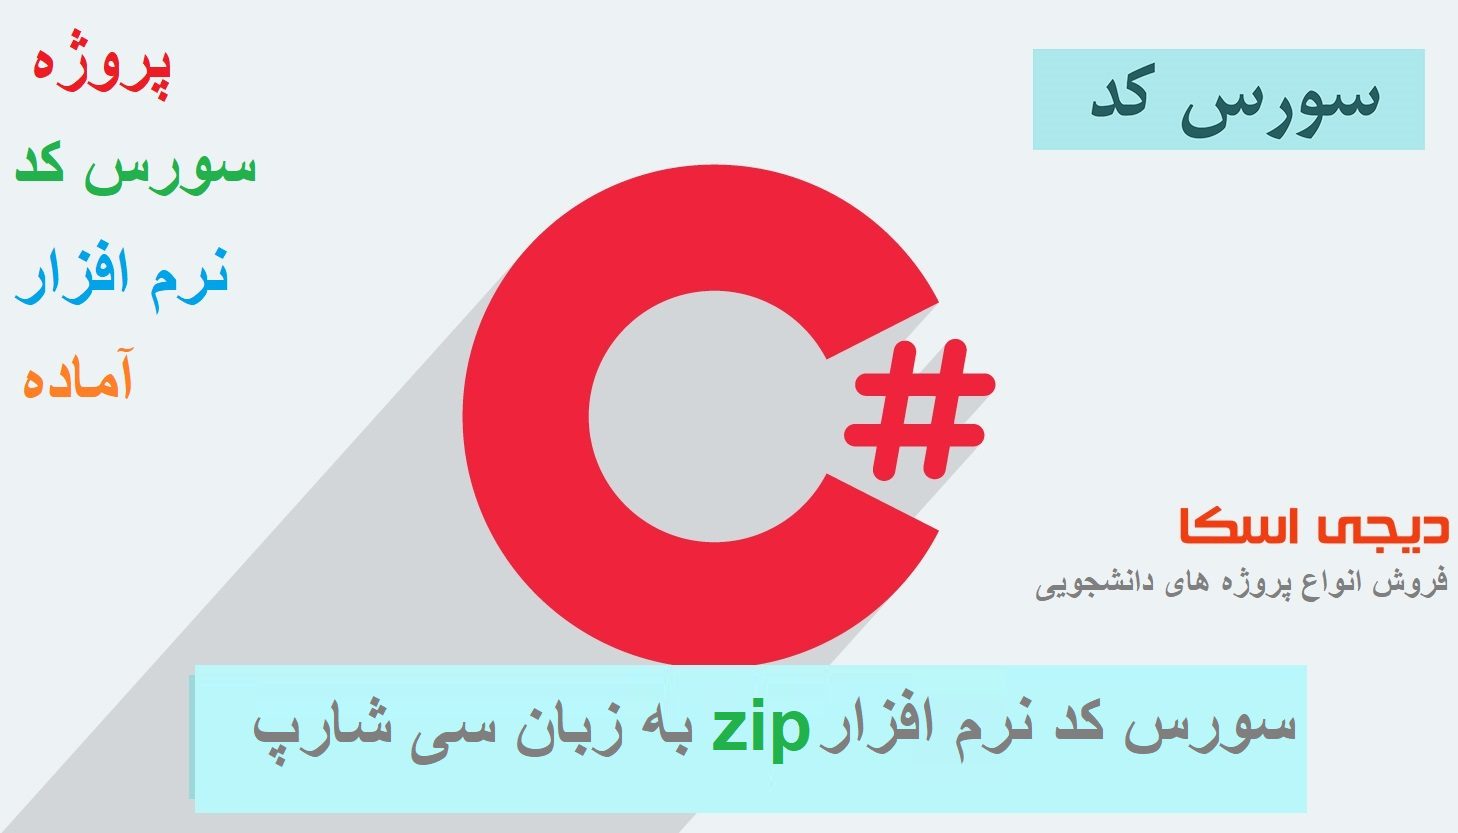 سورس کد نرم افزار zip به زبان سی شارپ #c